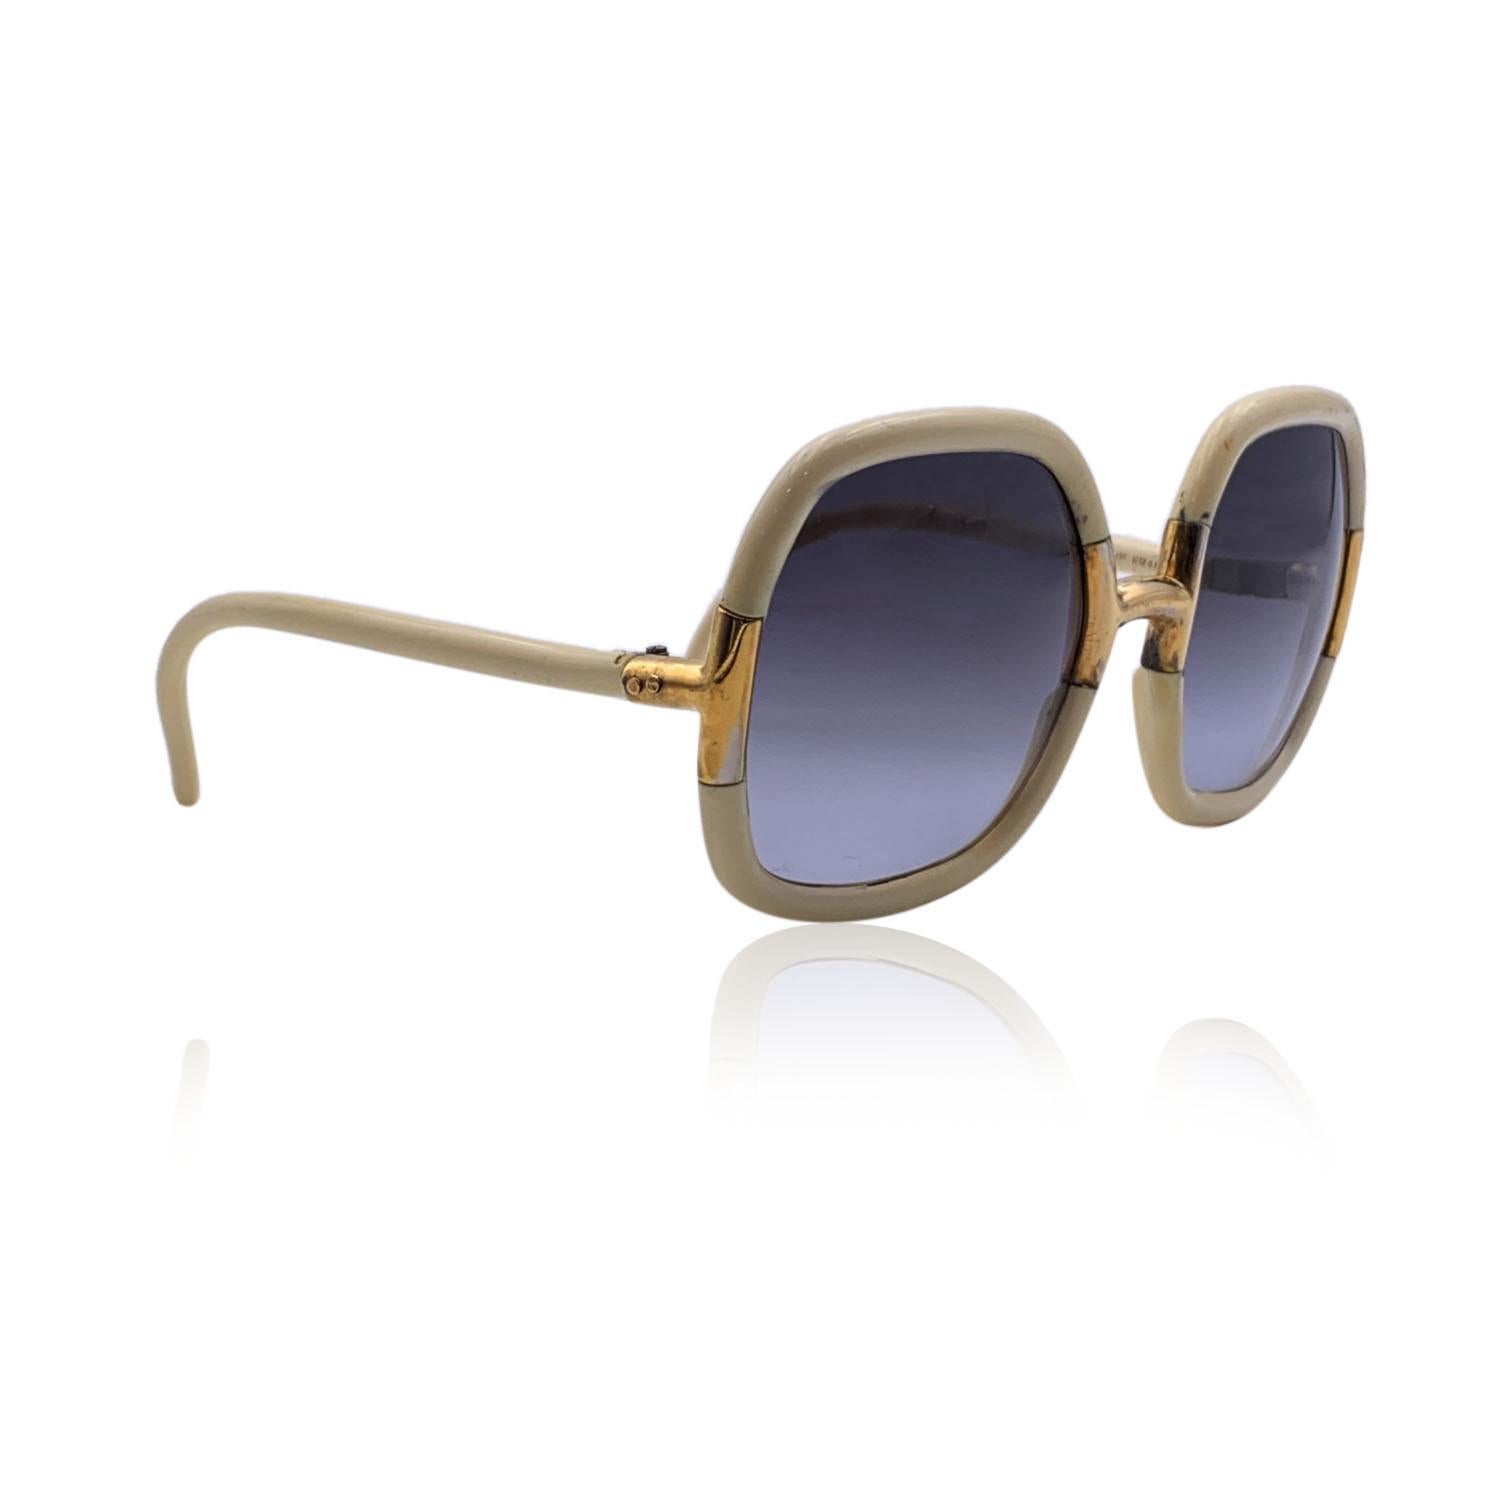 Vintage-Sonnenbrille in Übergröße aus den 70ern von TED LAPIDUS, mod.G 20. Hellbeiger Rahmen, akzentuiert mit goldenen Metallelementen. Hellgraue Gläser mit Farbverlauf (100% UV-Schutz). Hergestellt in Frankreich

Einzelheiten

MATERIAL: